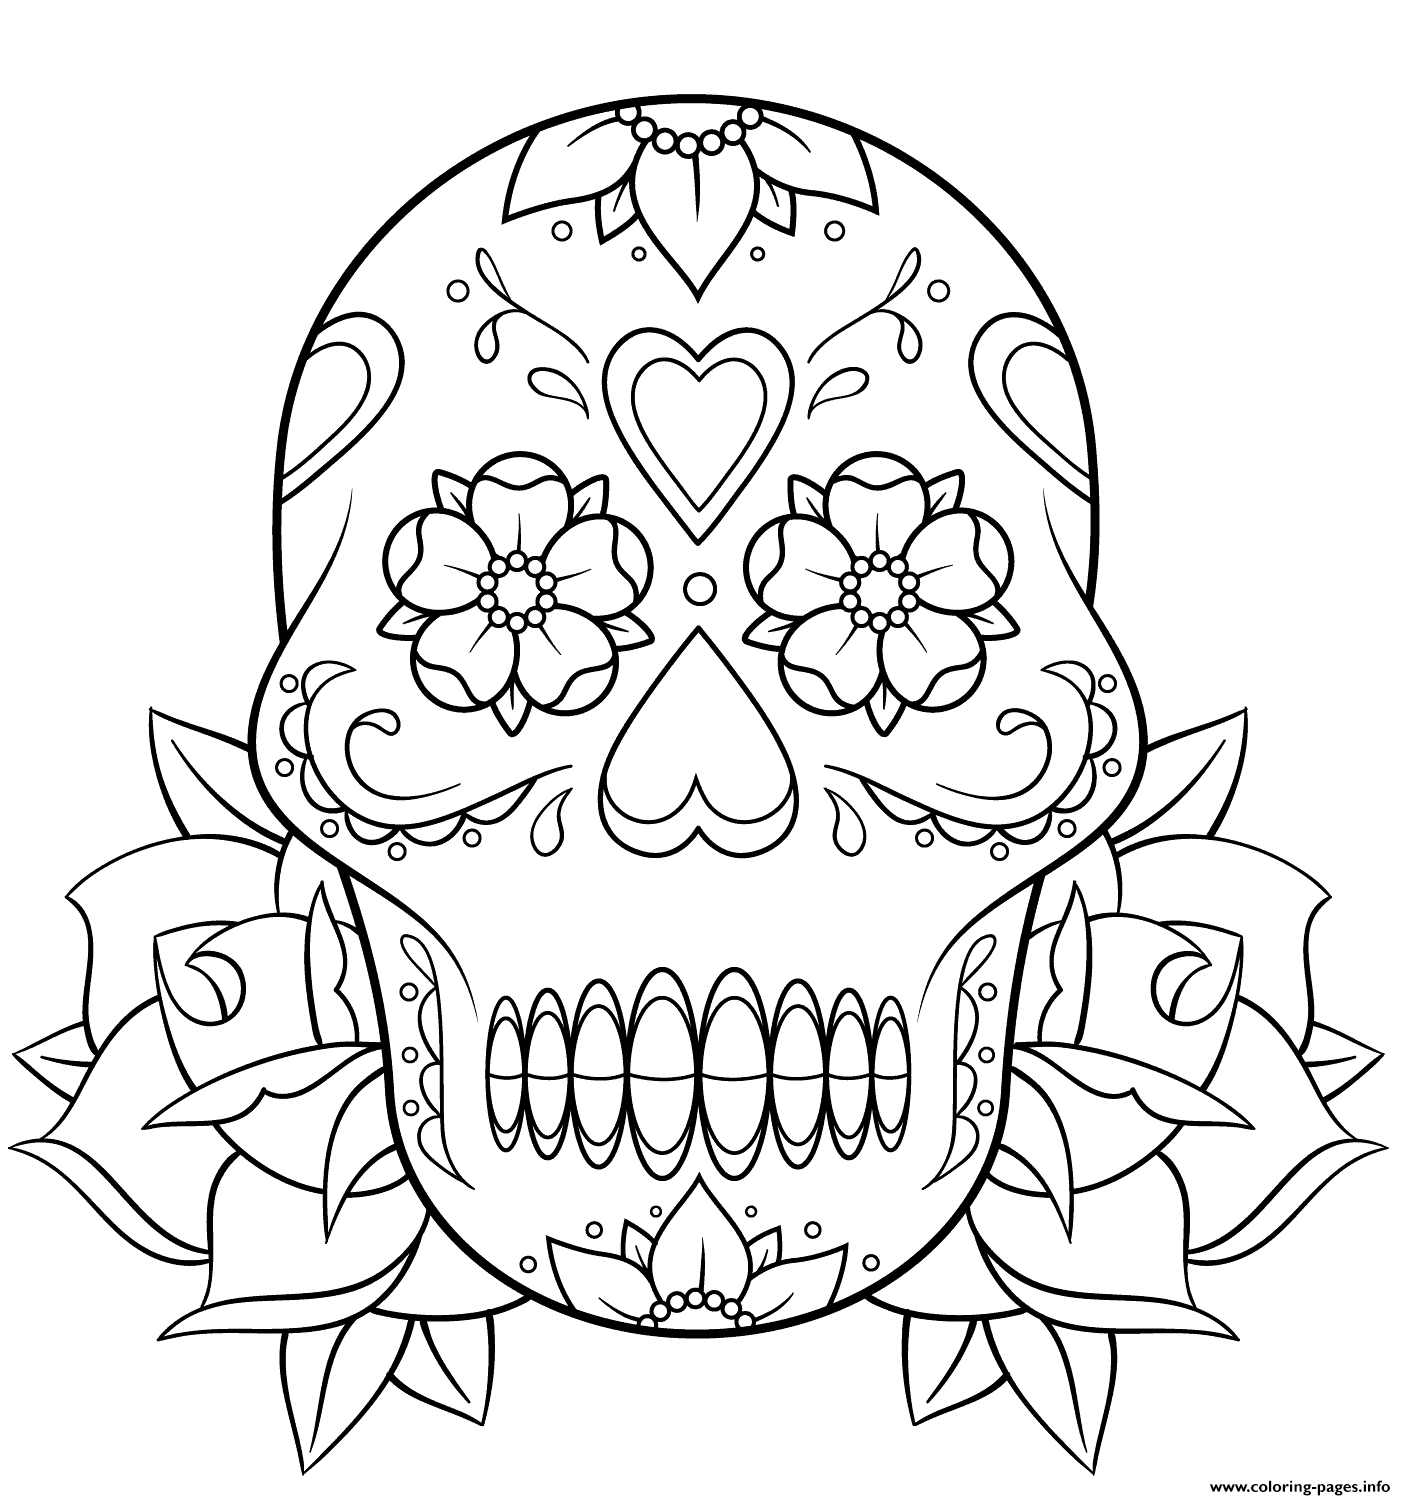 sugar-skull-and-roses-2-calavera-coloring-pages-printable